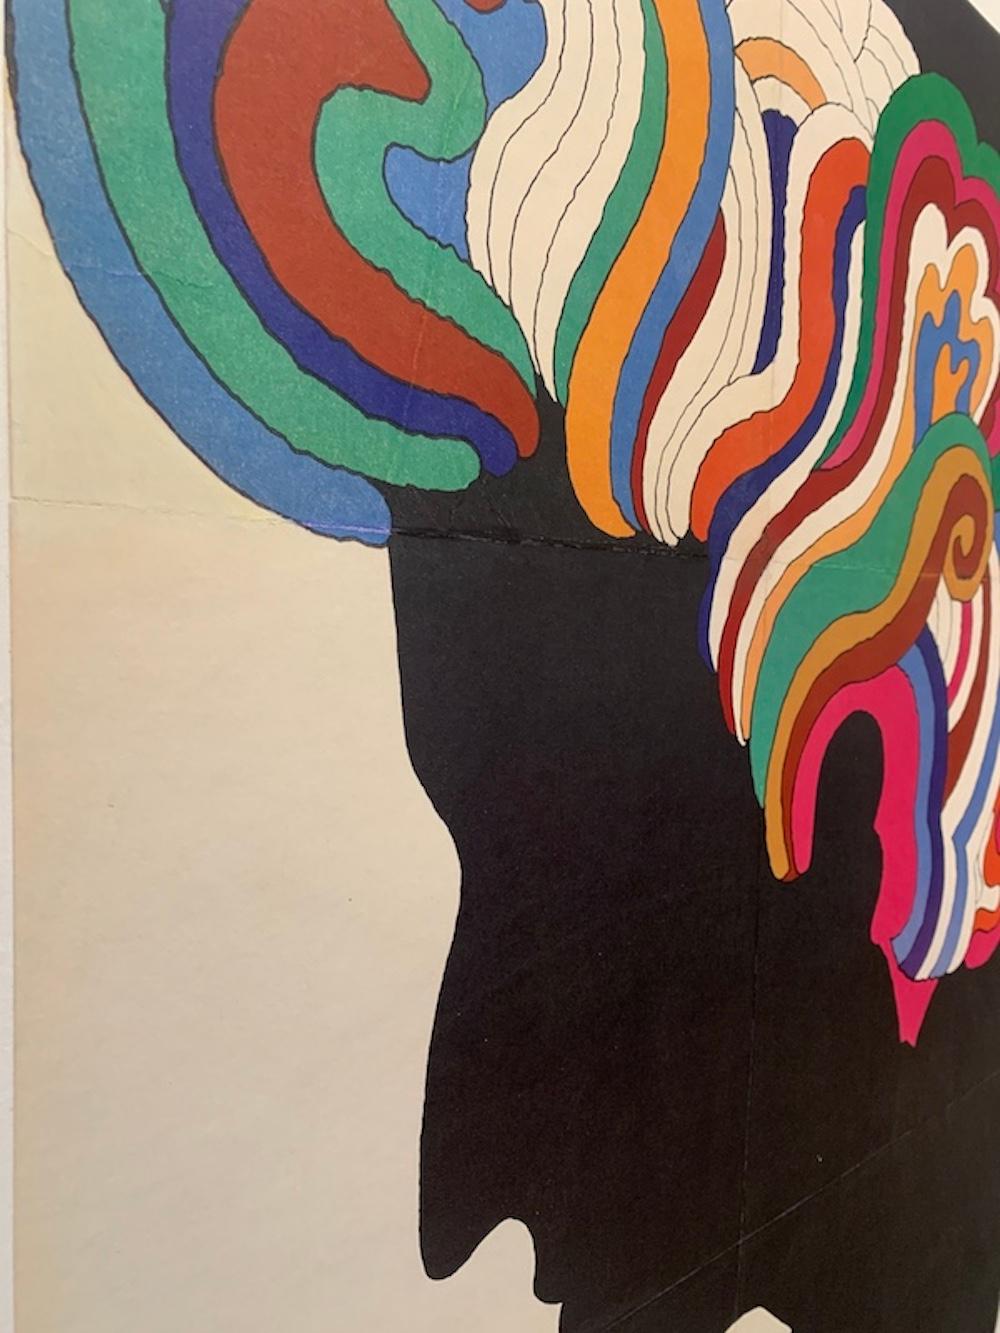 Affiche vintage originale de BOB DYLAN par Milton Glaser, 1966

Glaser a appliqué son style psychédélique caractéristique à une affiche qu'il a conçue pour Columbia Records en 1967 afin d'illustrer l'album Greatest Hits de Bob Dylan. Ce travail lui